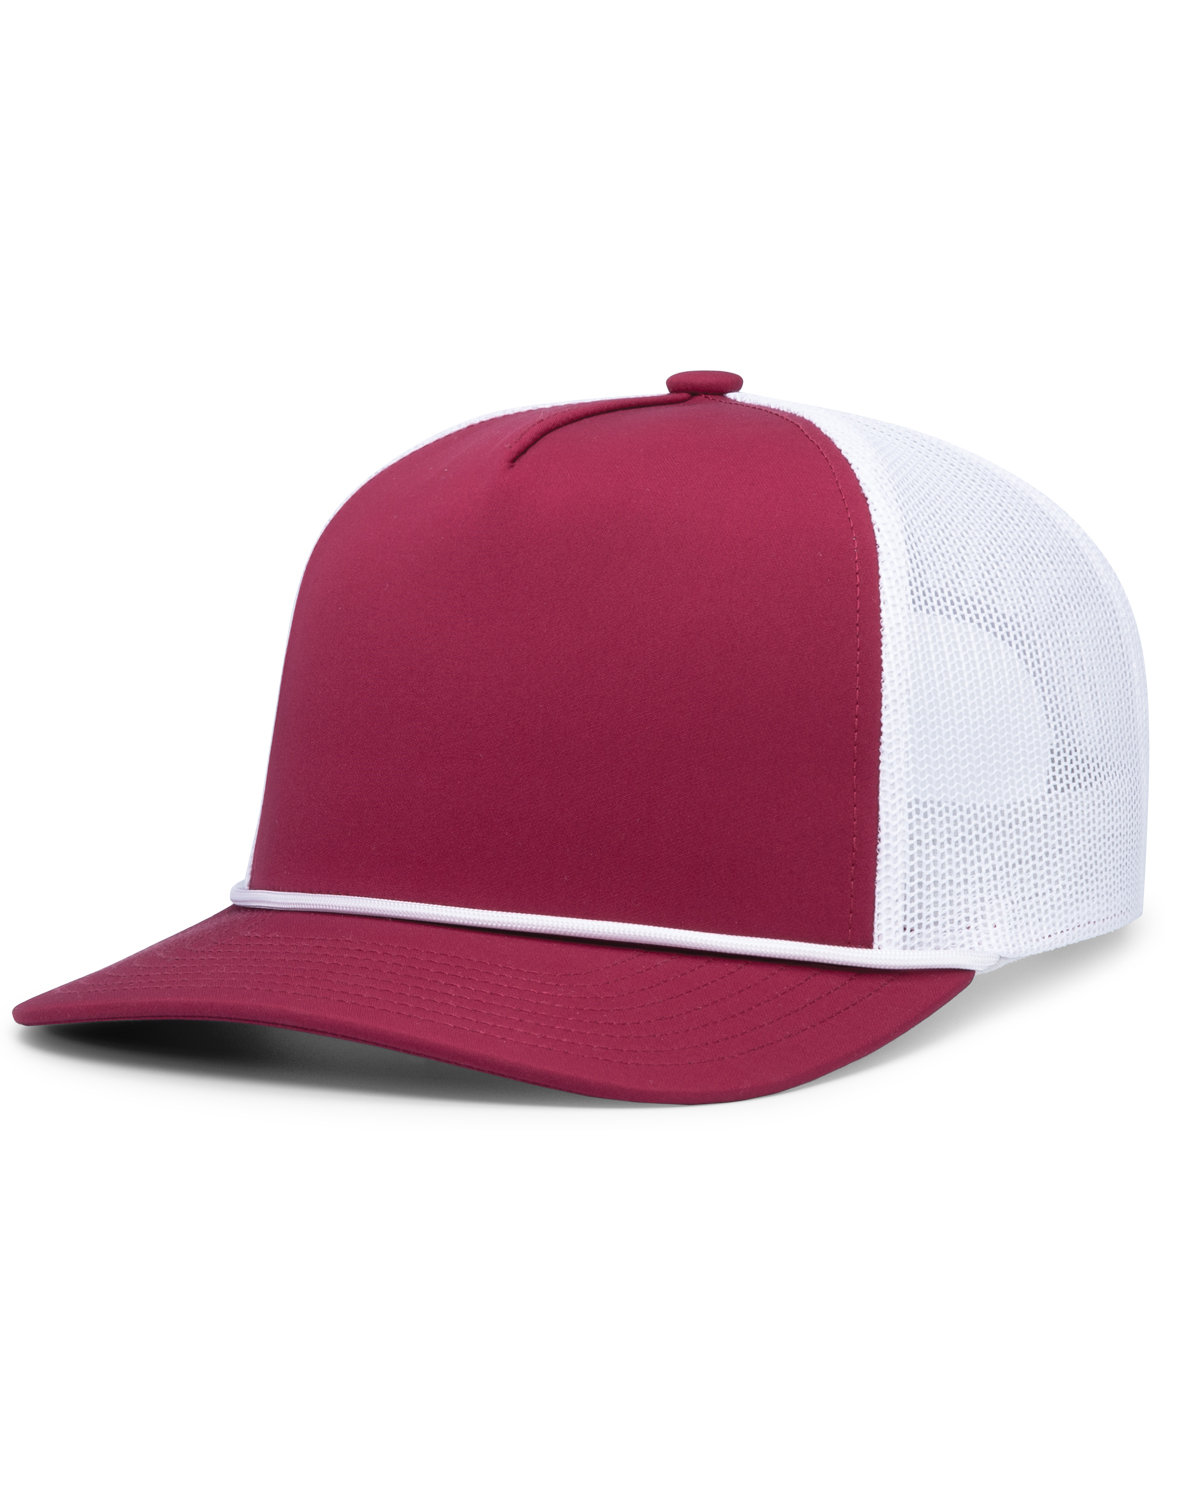 Pacific Headwear Weekender Trucker Hat | alphabroder